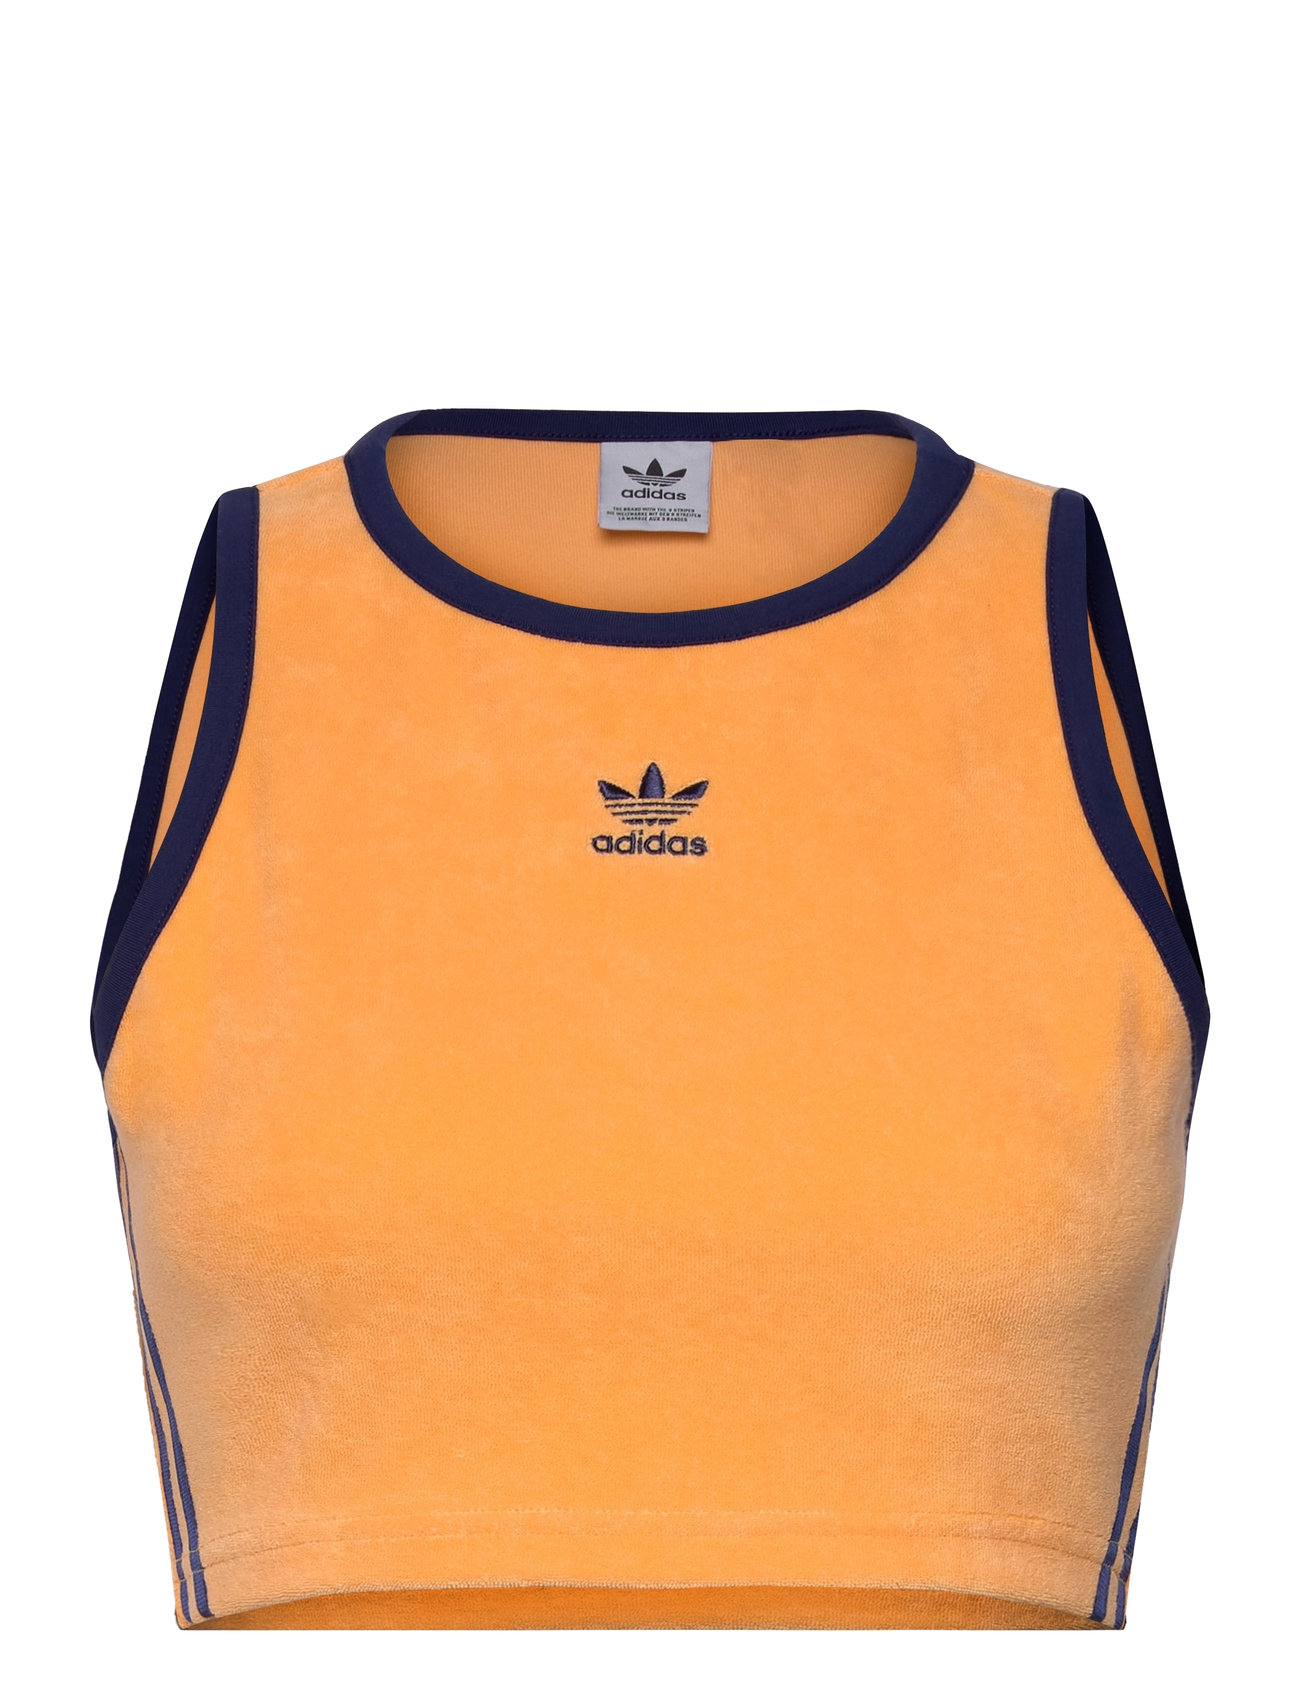 Terry Crop Tank Tops Crop Tops Sleeveless Crop Tops Orange Adidas Originals